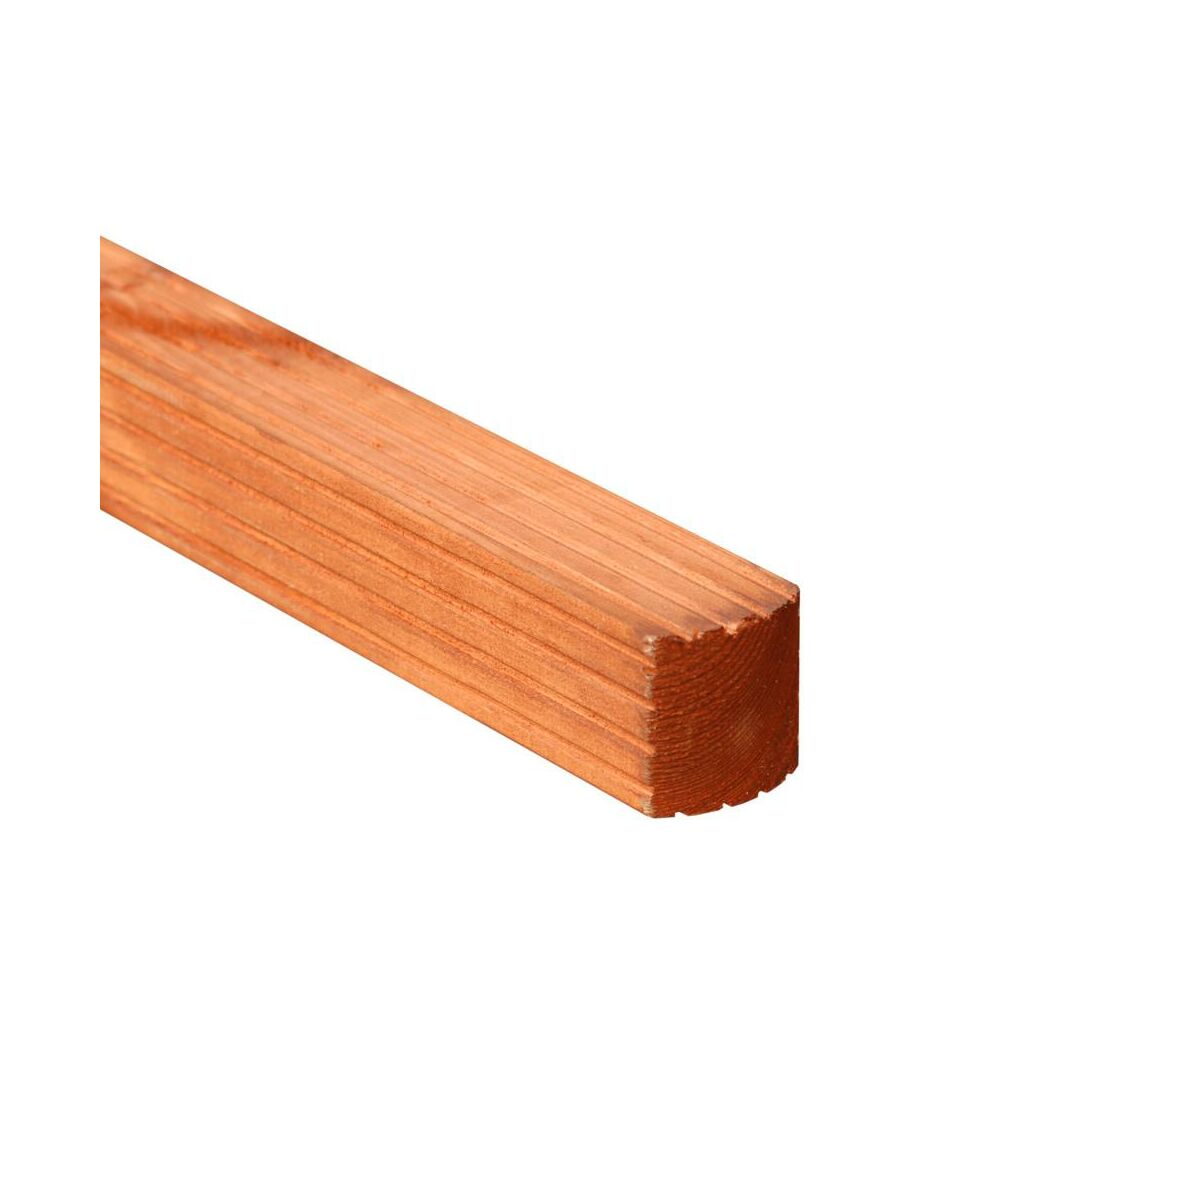 Kantówka drewniana Wien teak 7x7x180 cm brązowa Werth-Holz